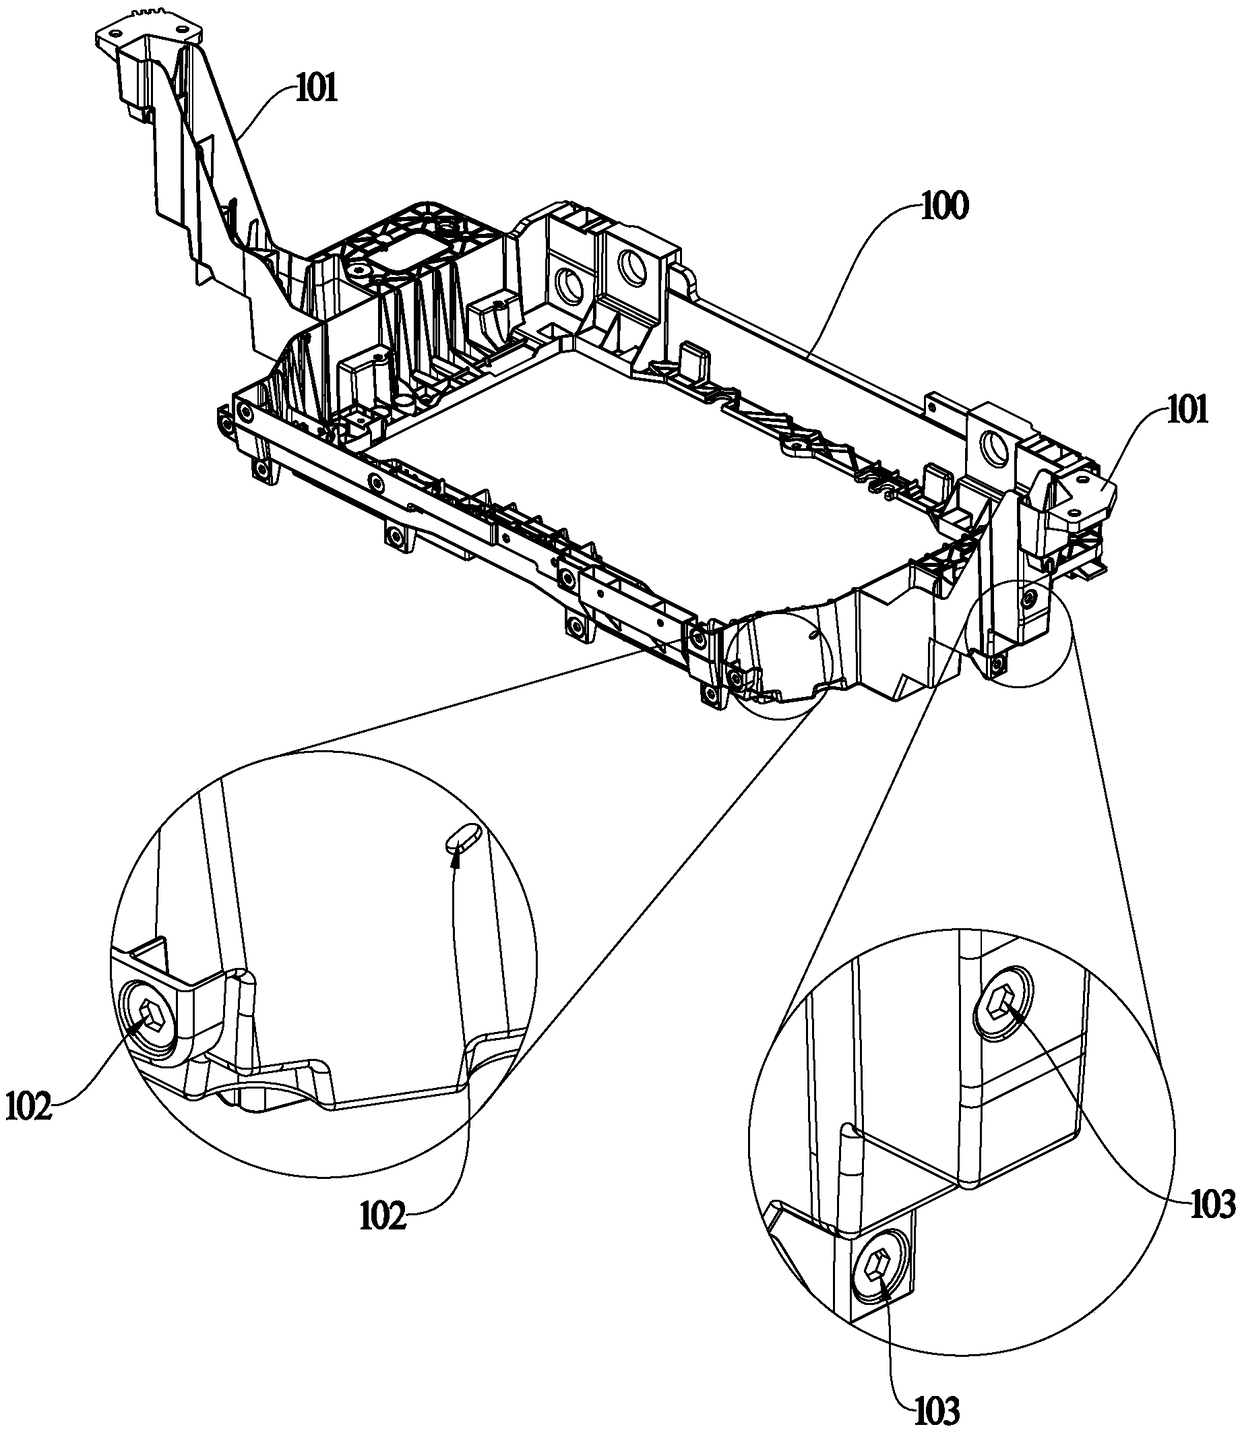 Demolding mechanism for car front-end framework mold